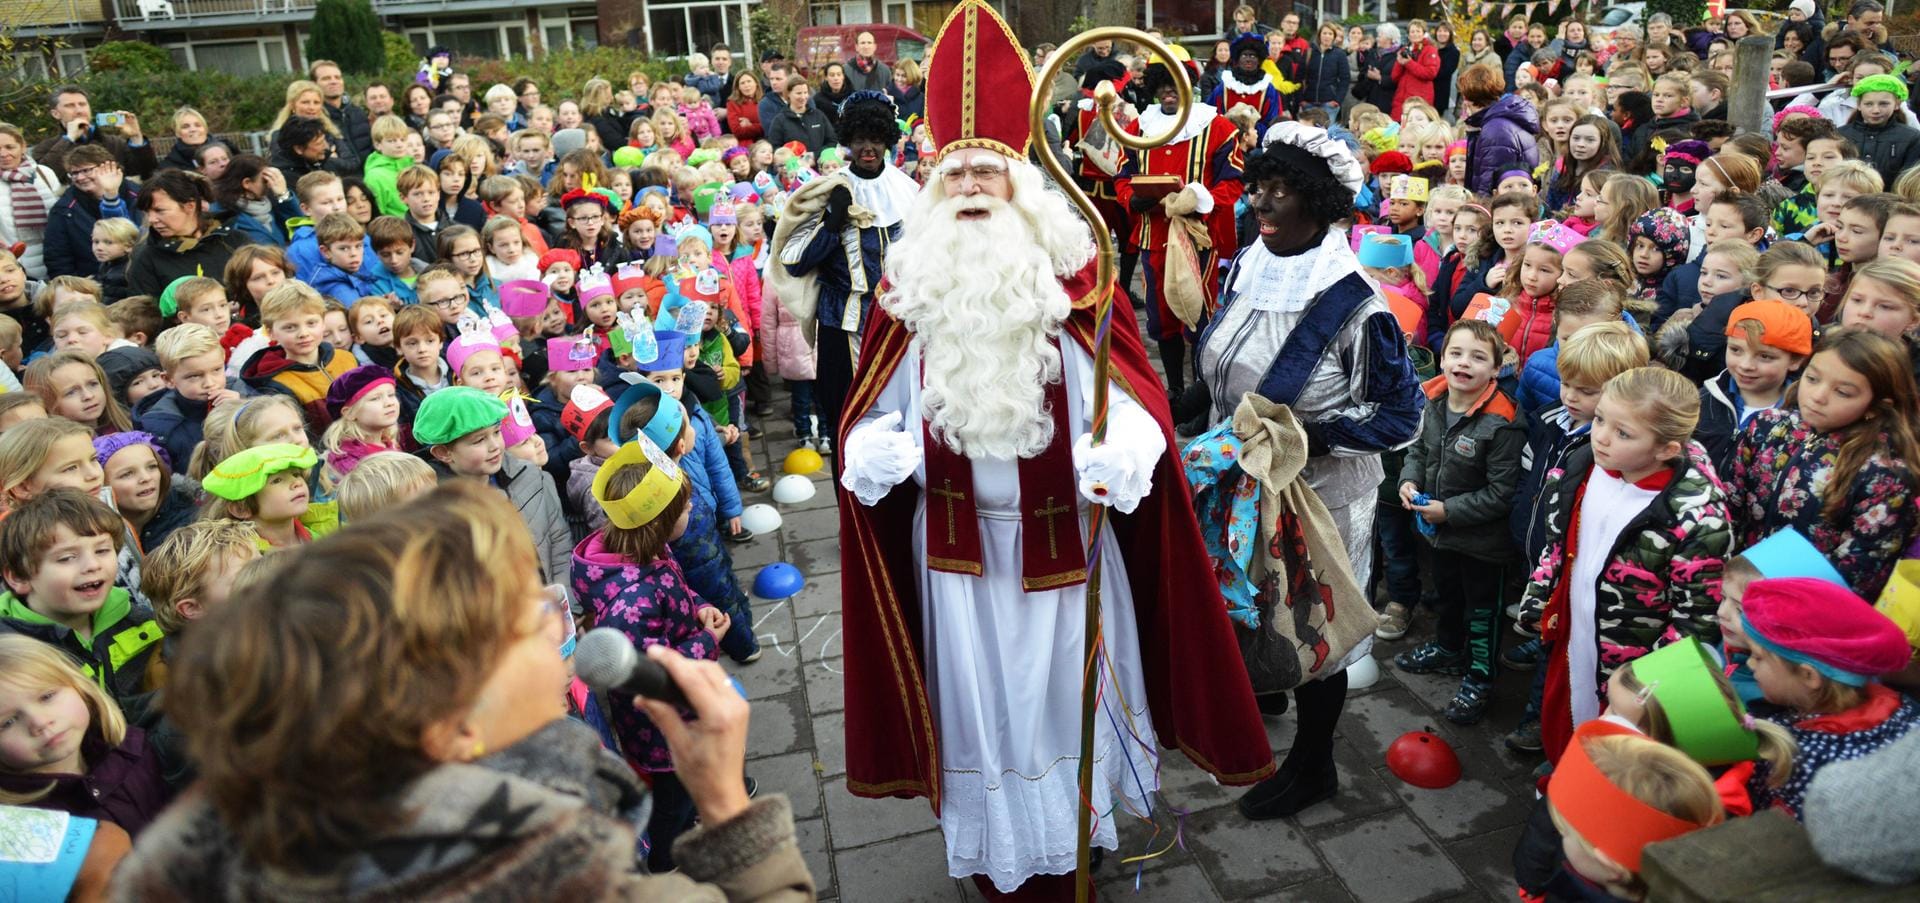 Für die Niederländer ist in der Weihnachtszeit der wichtigste Tag bereits der Nikolaustag. Schon am Abend des 6. Dezember gibt es Bescherung – damit sind die Niederlande das einzige christliche Land, das schon so früh das Familienfest feiert.